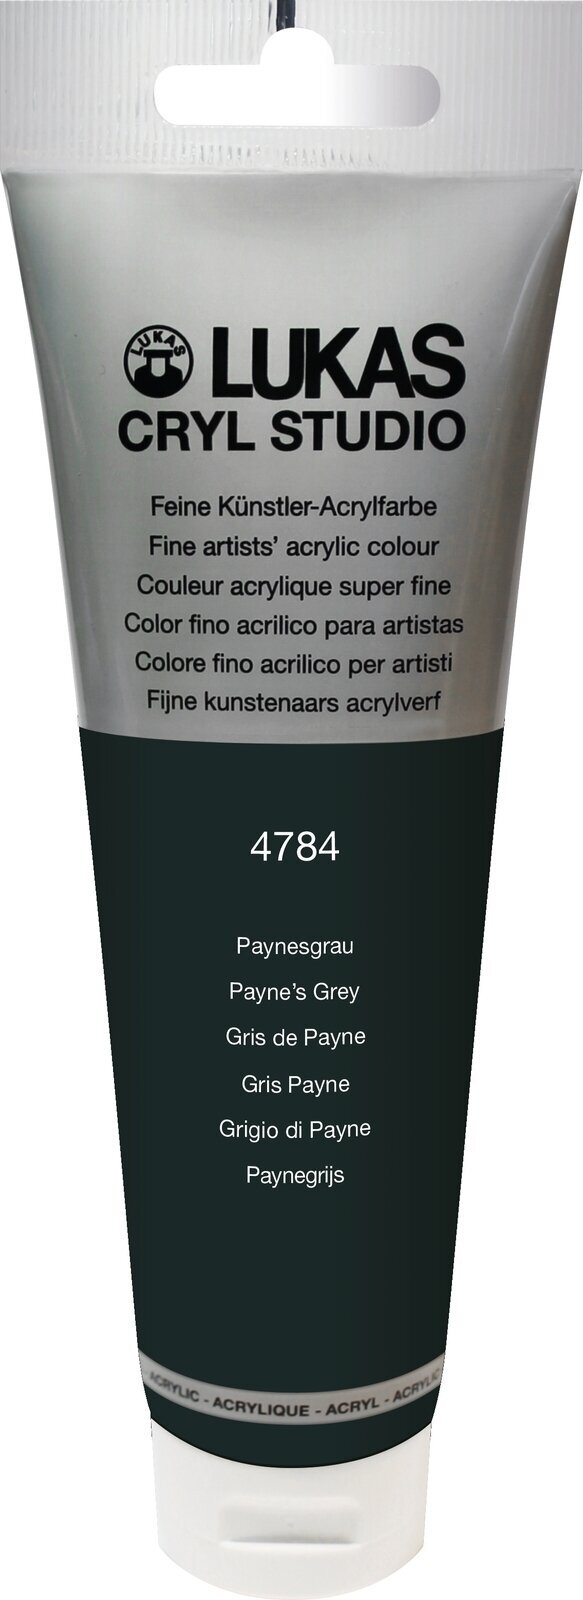 Akrylová barva Lukas Cryl Studio Akrylová barva 125 ml Payne's Grey